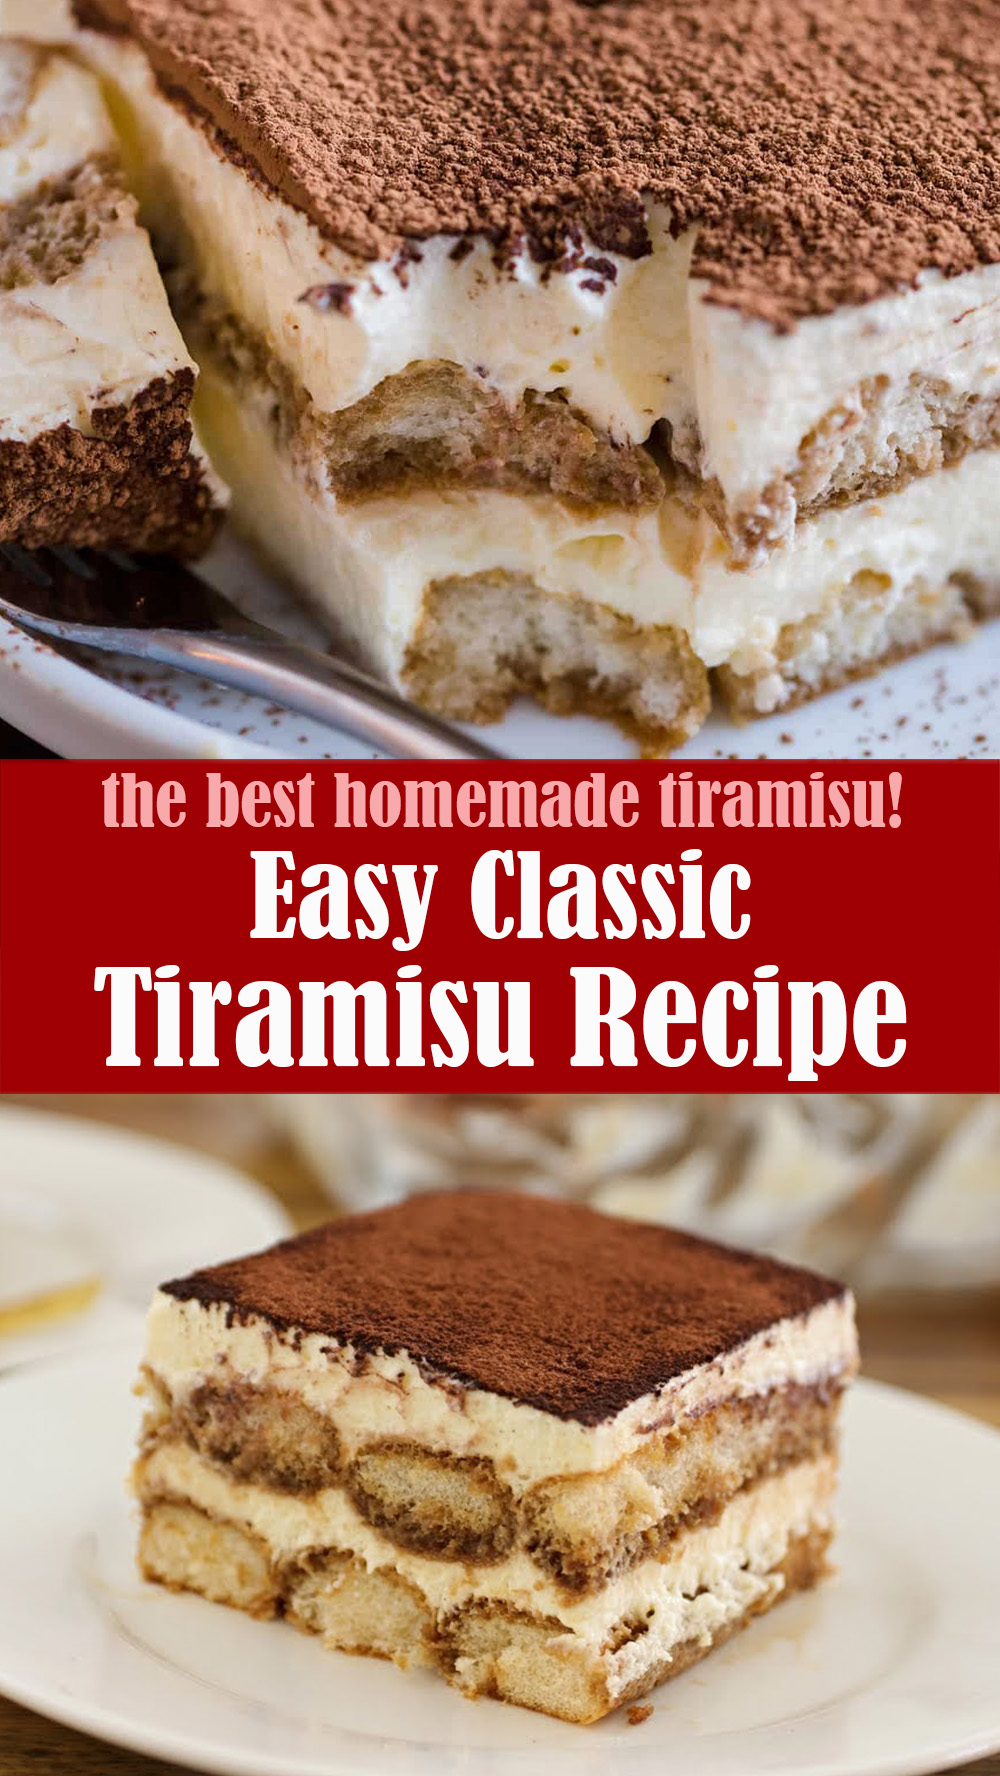 Easy Classic Tiramisu Recipe